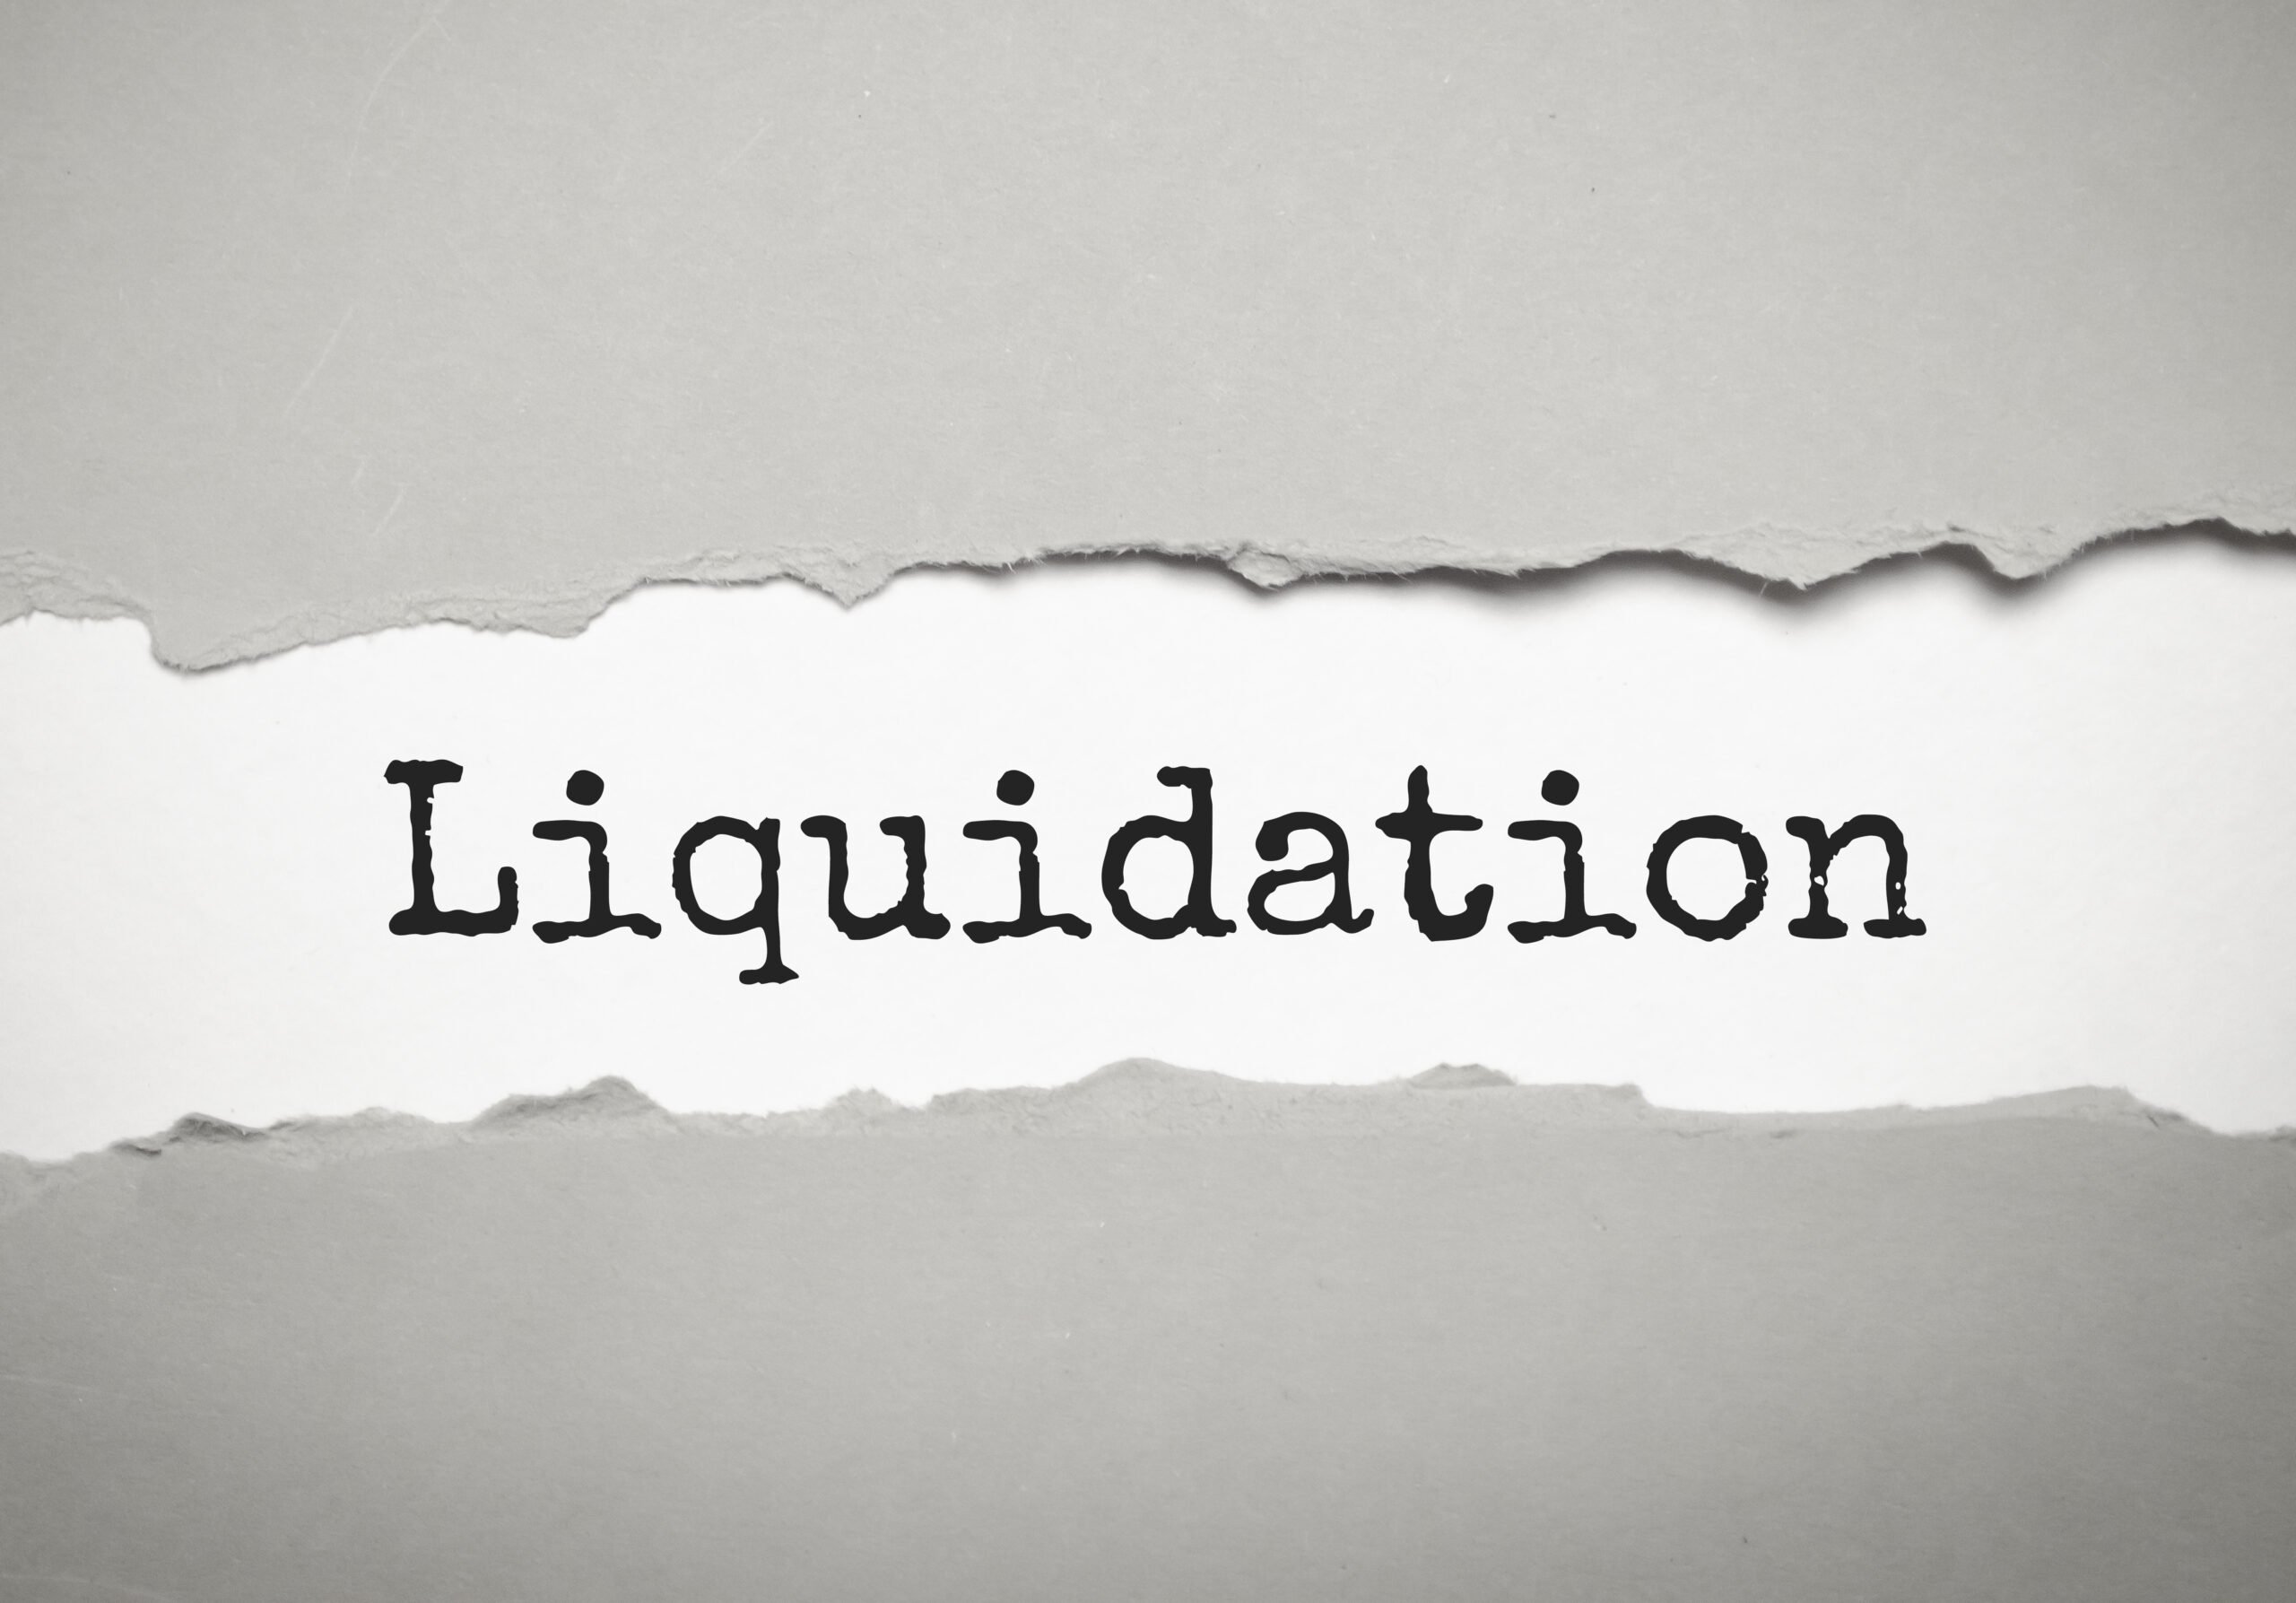 Digging deeper into liquidations